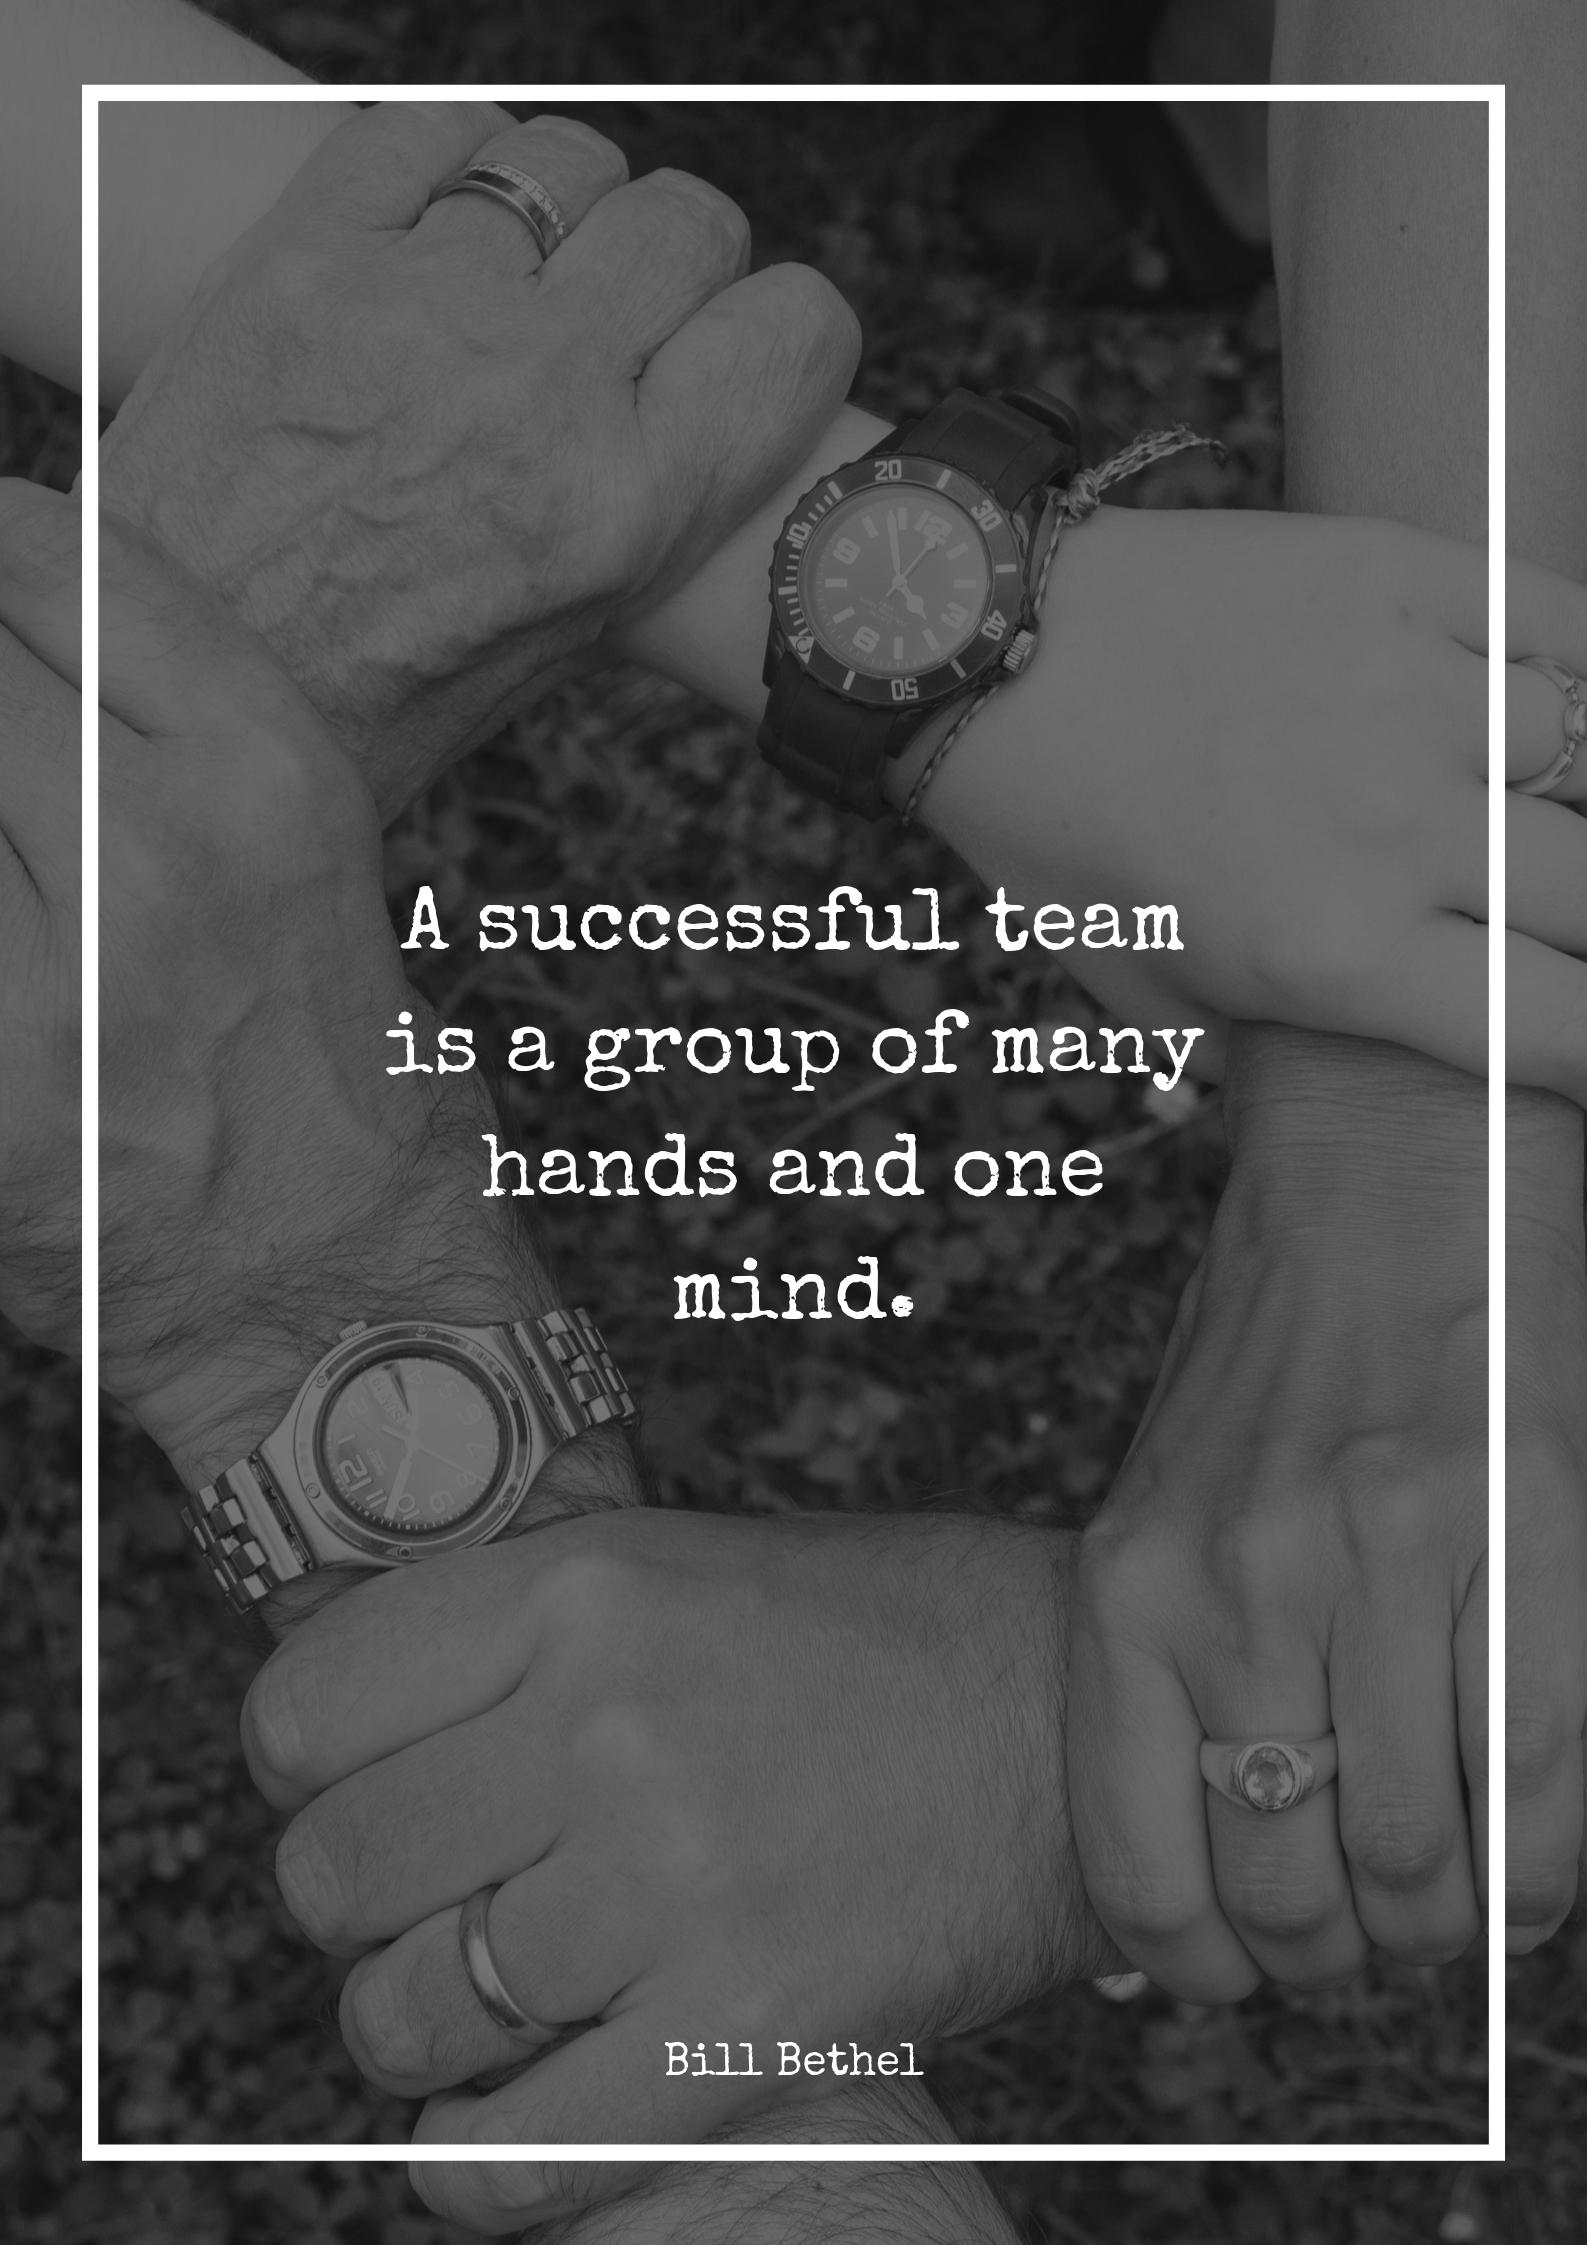 Best Teamwork Quotes